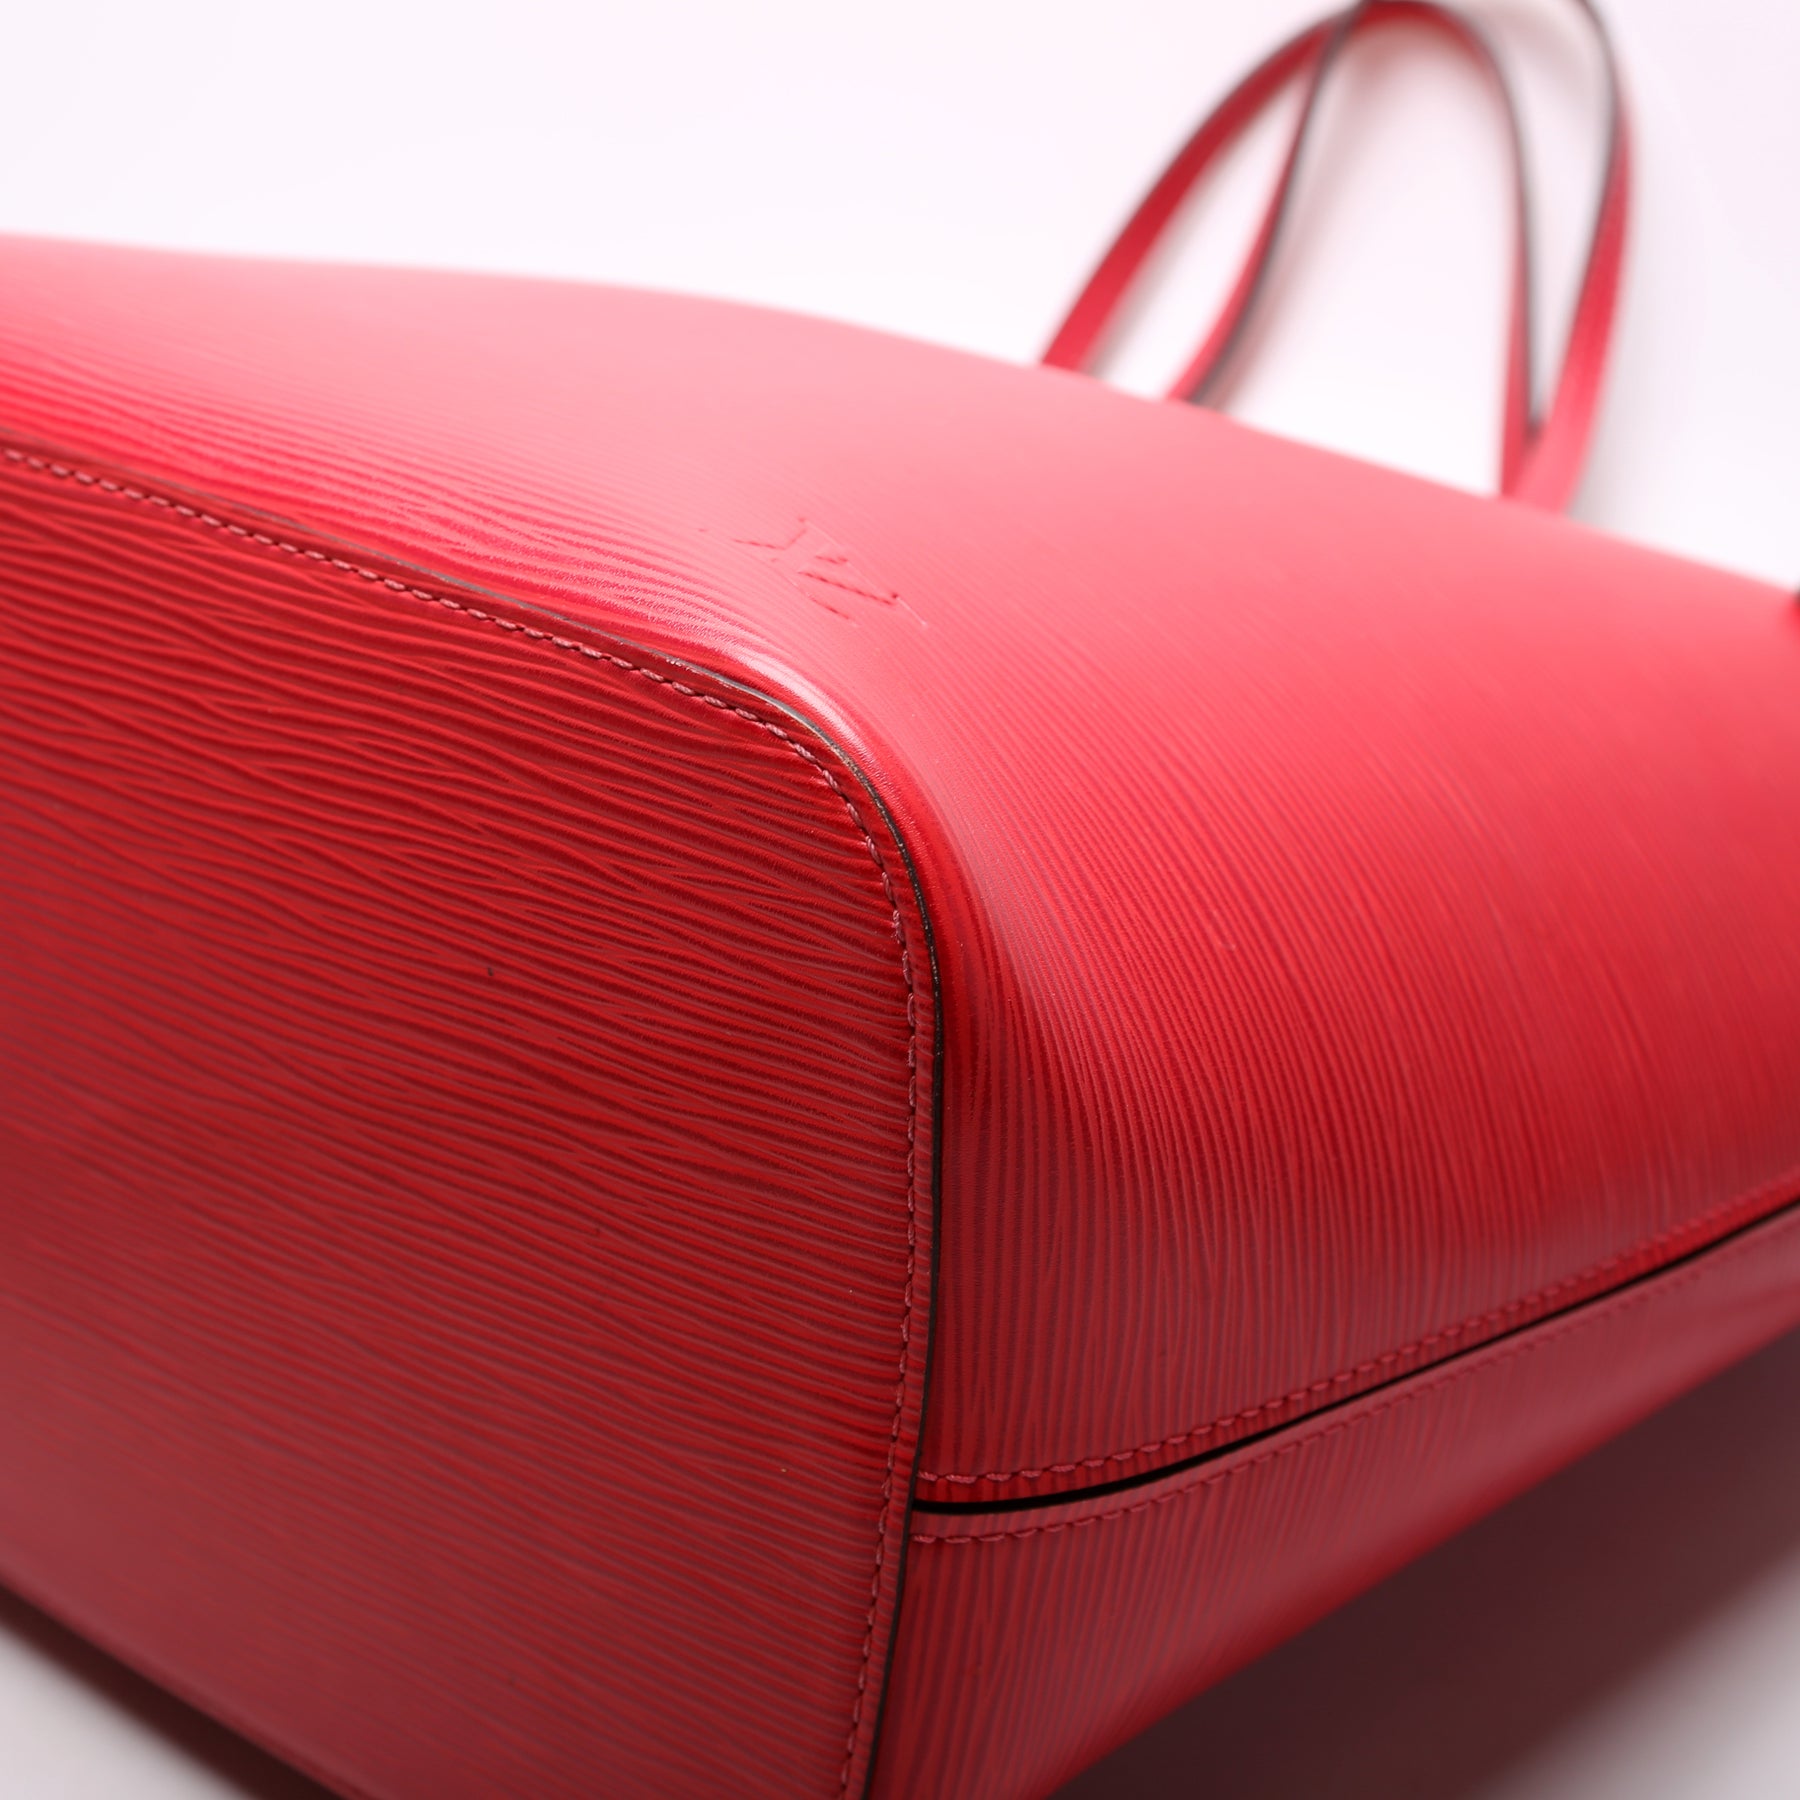 Authentic Large Red Epi Leather Louis Vuitton Lussac Handbag Bag